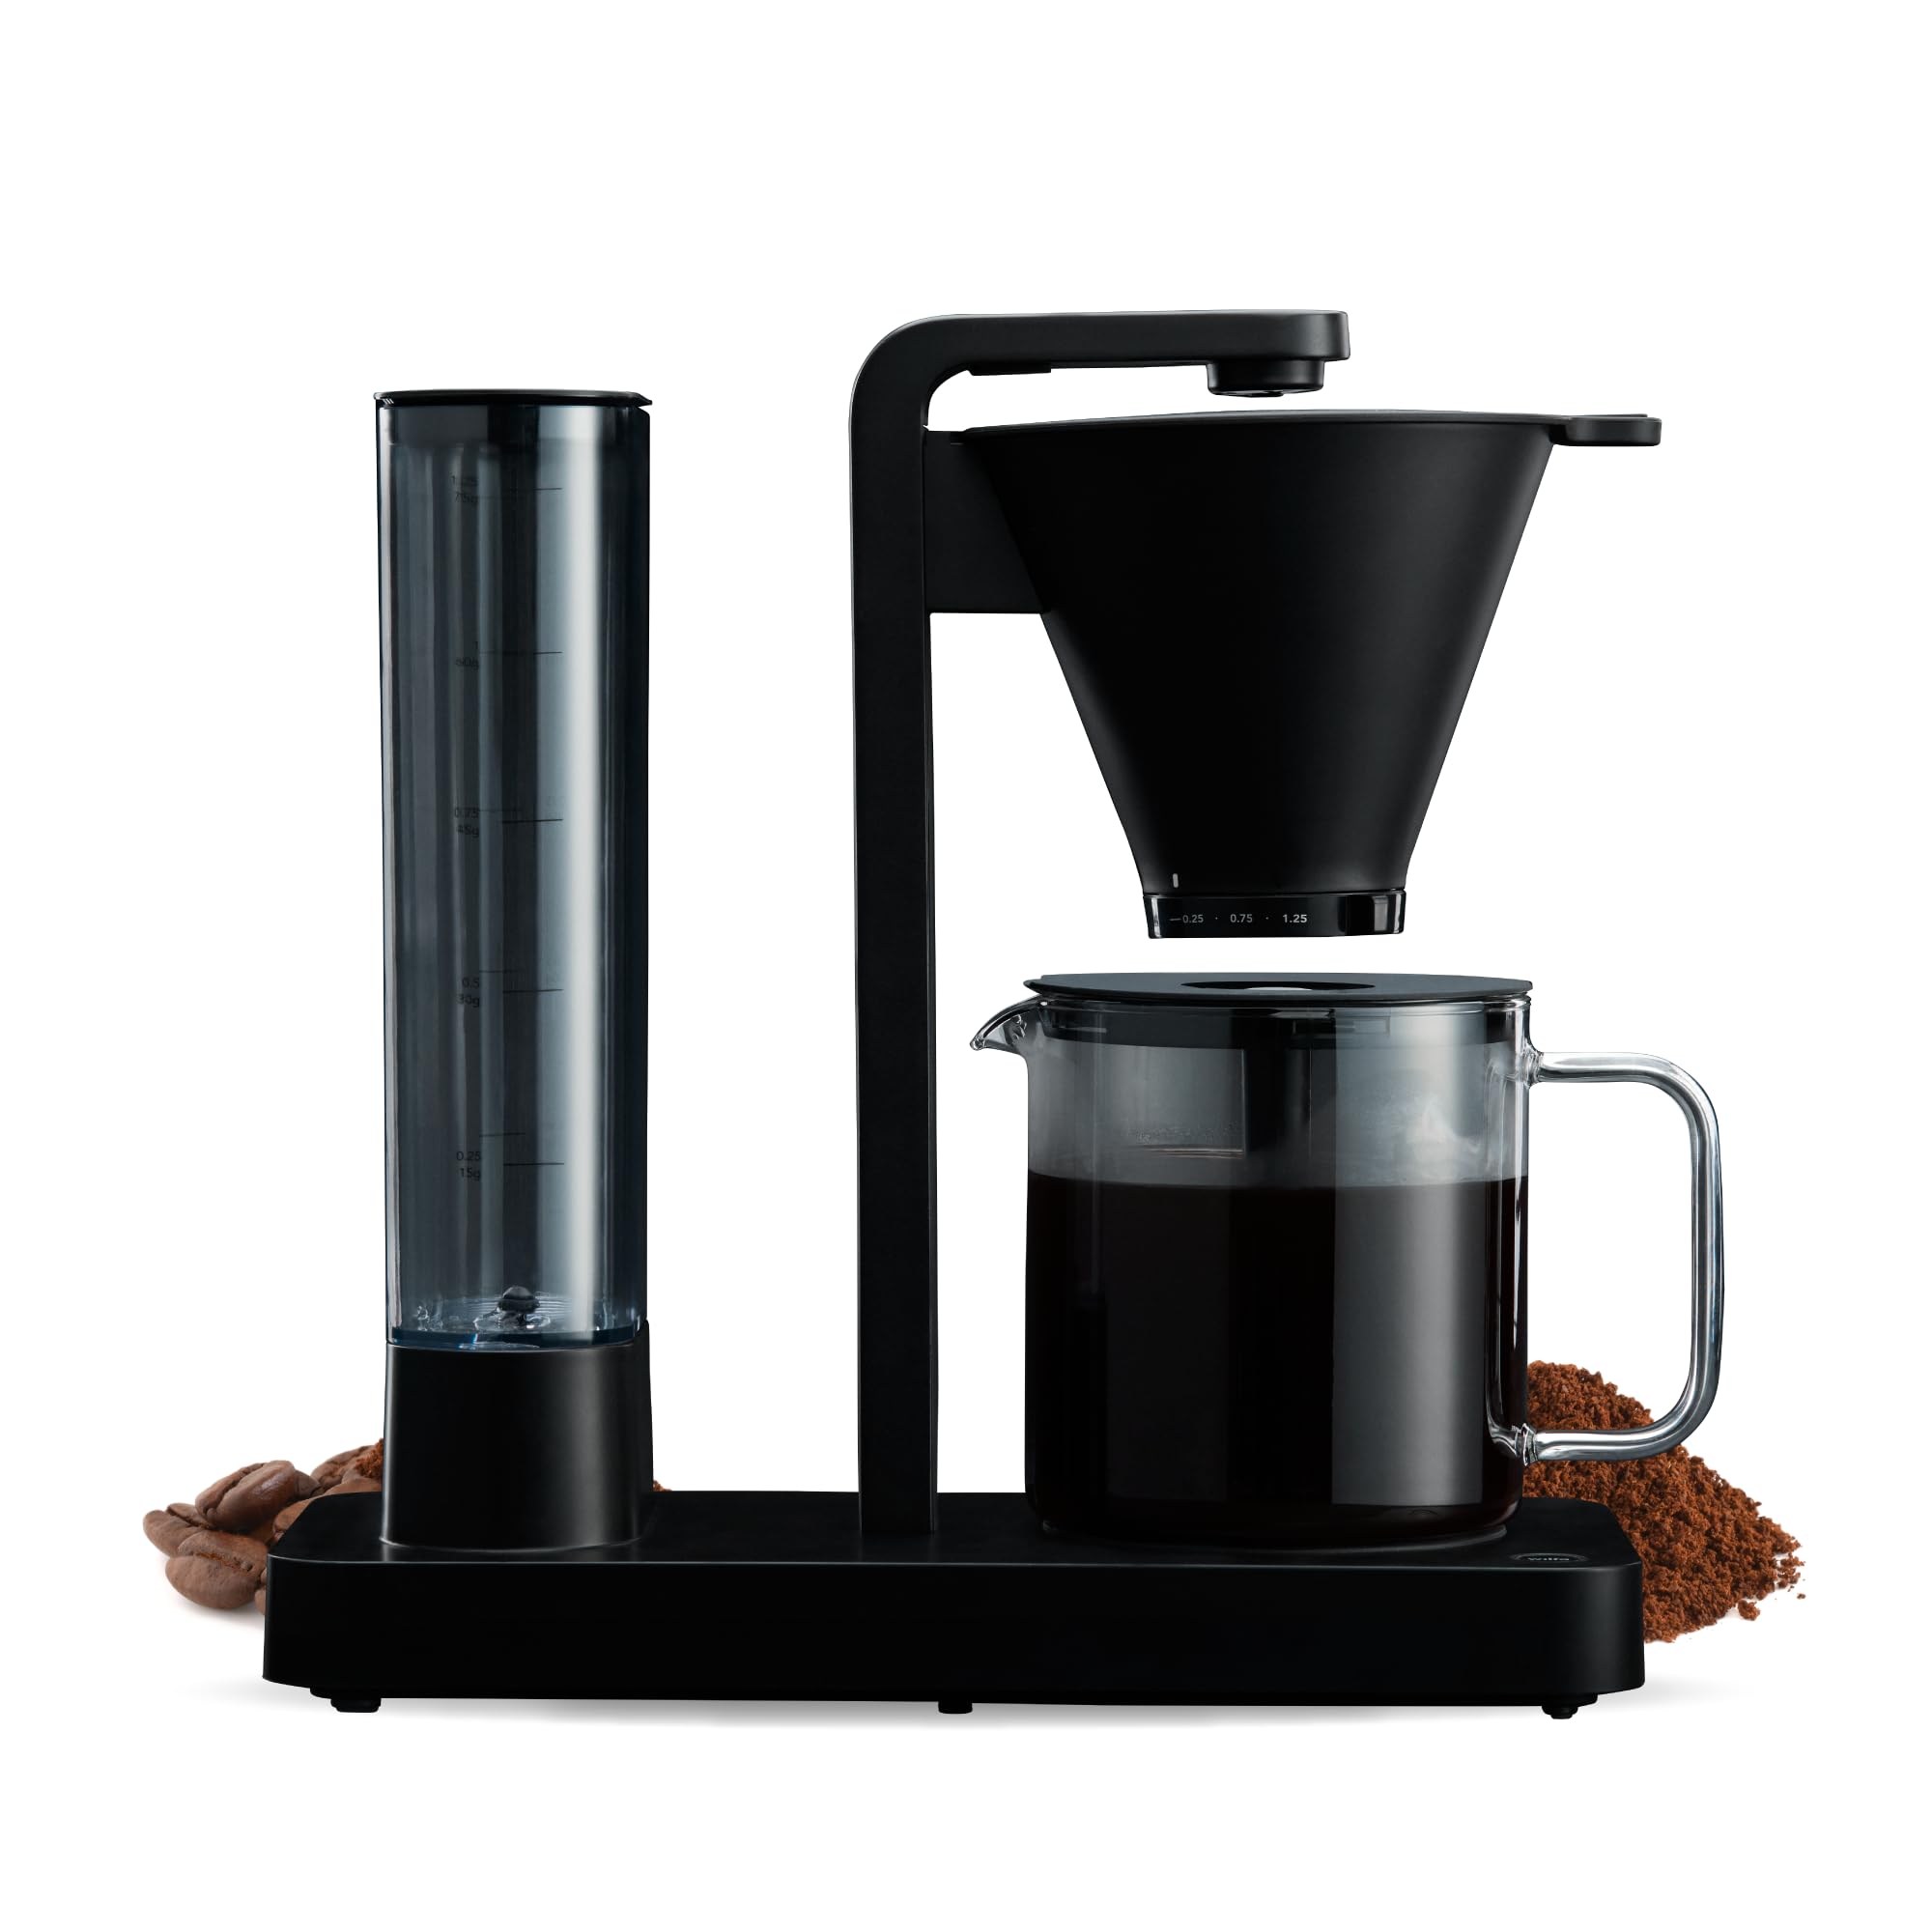 Wilfa PERFORMANCE Filterkaffeemaschine – extra starke 1800 Watt, aus Edelstahl mit eleganter Glaskanne, 1,25L/10 Tassen, Wasserbehälter abnehmbar, einstellbare Extraktionszeit, schwarz